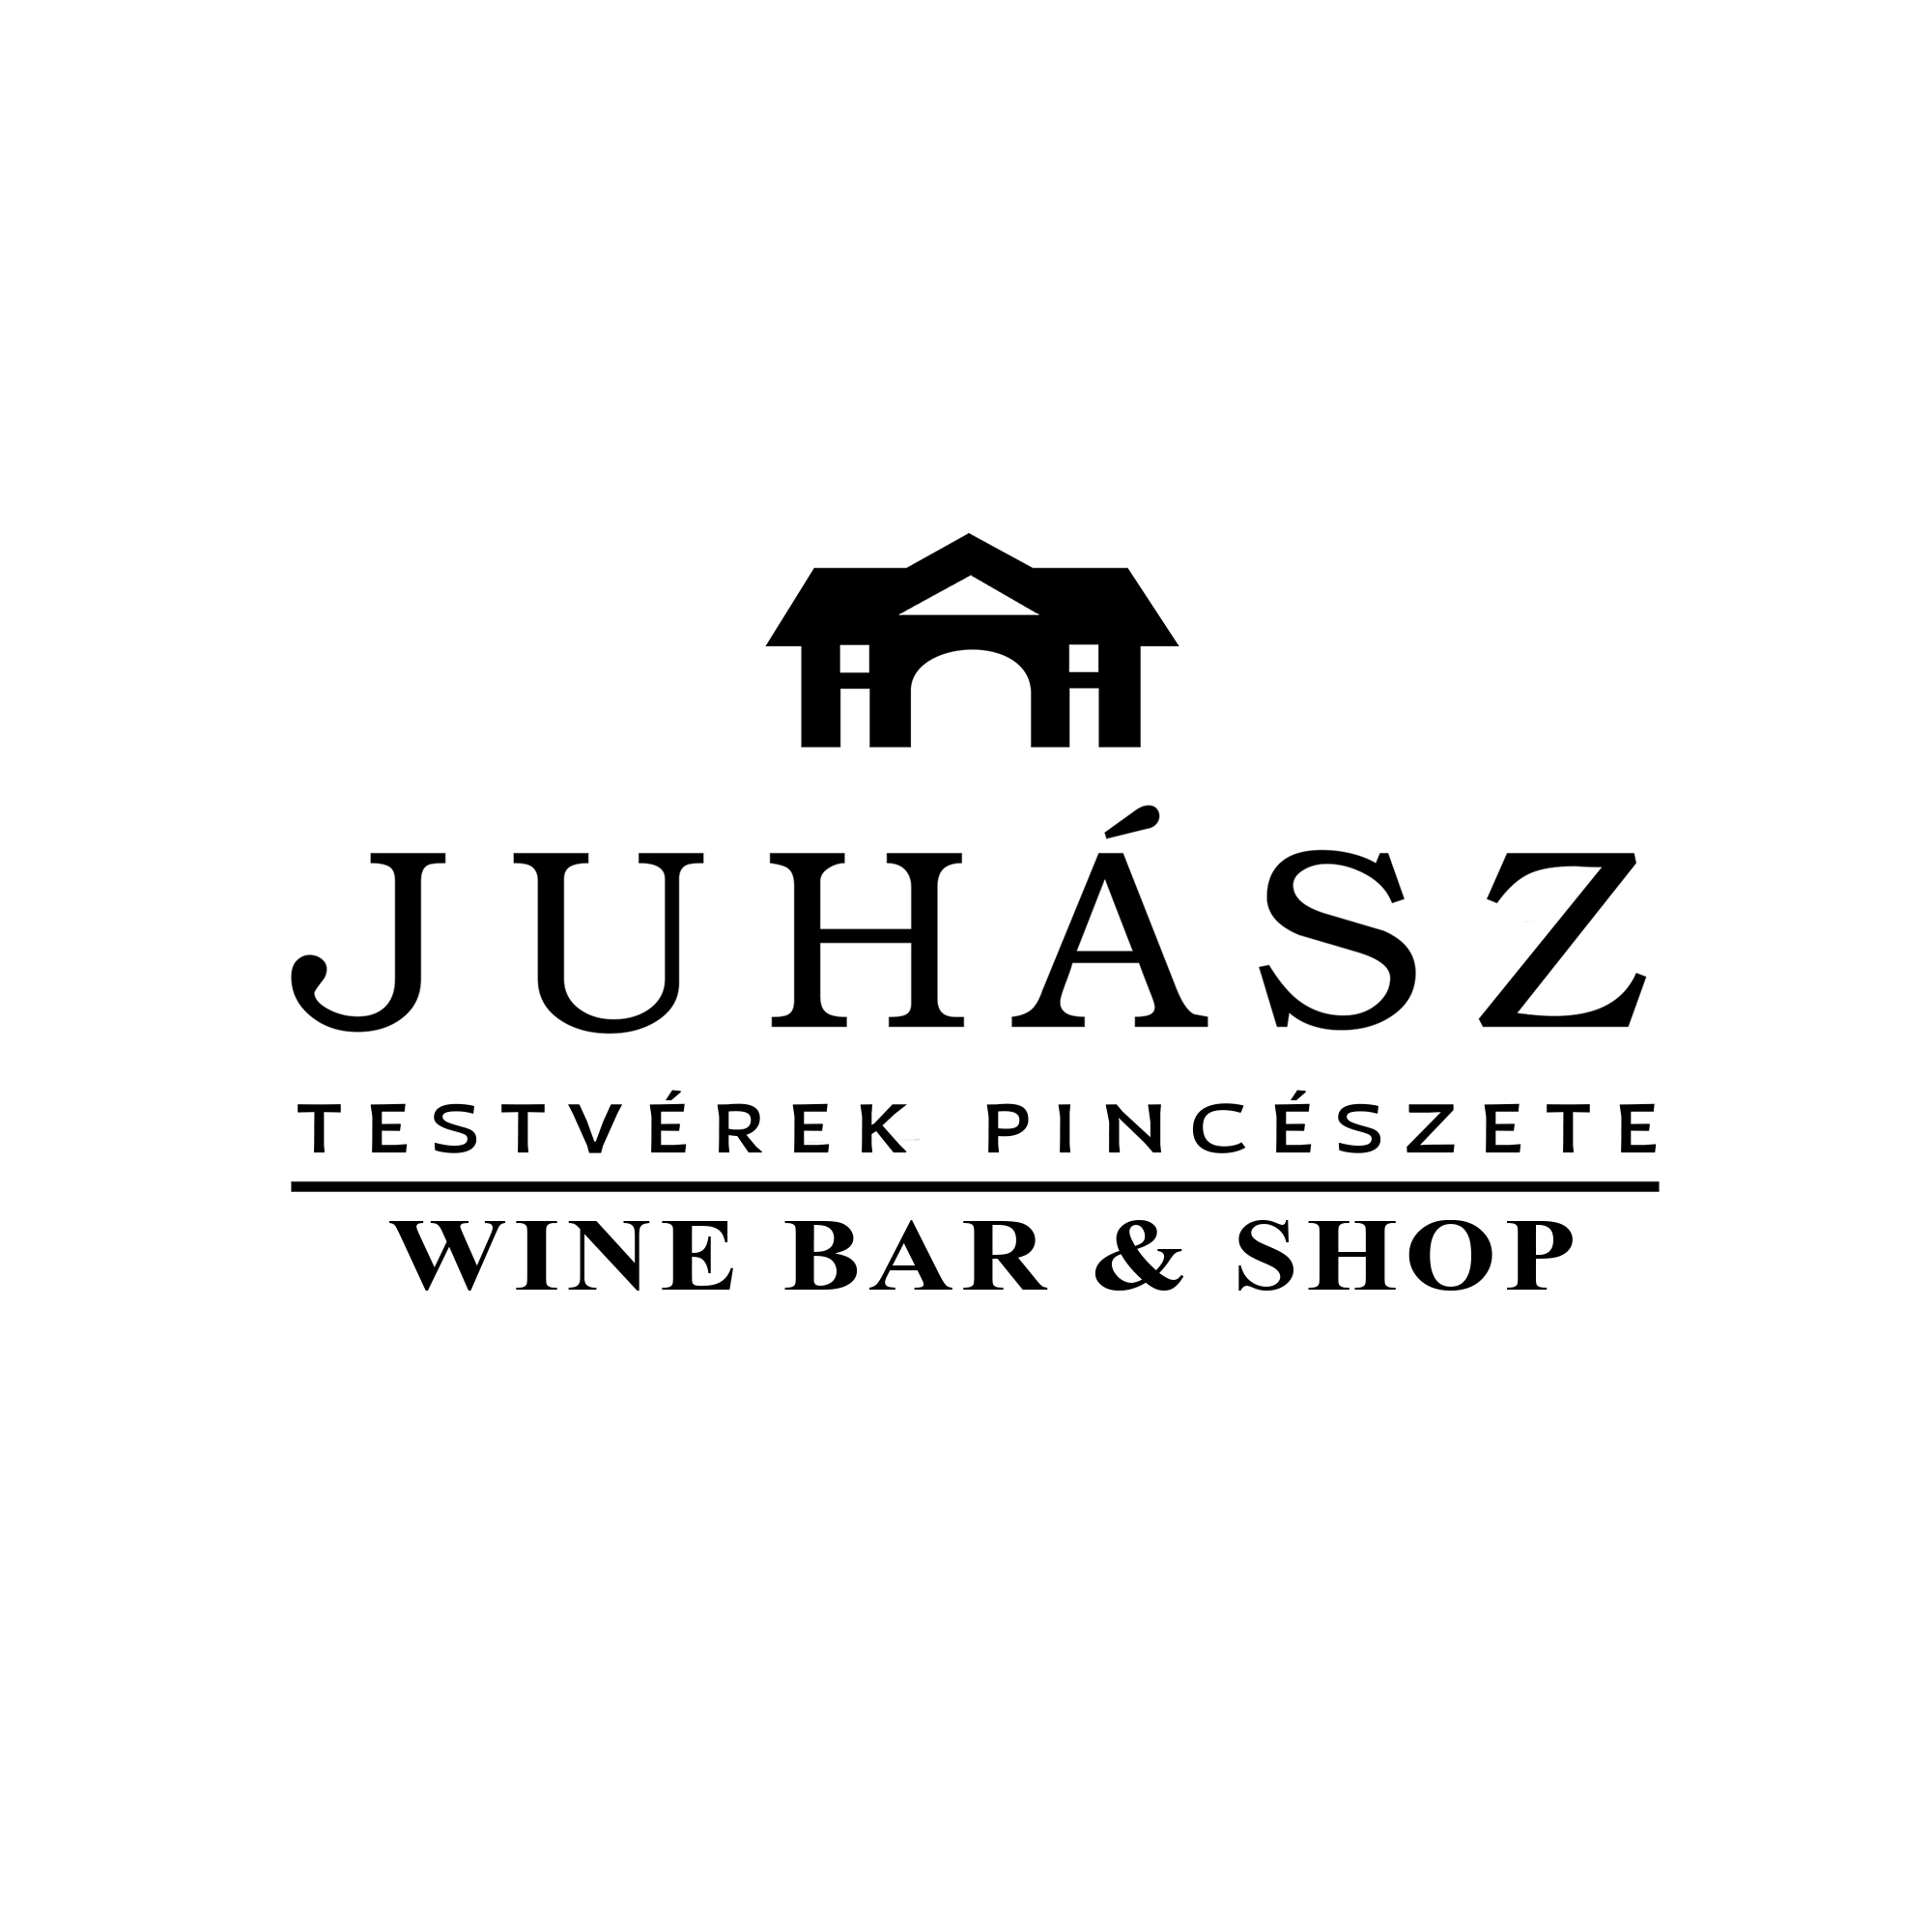 Juhász Testvérek Pincészete Wine Bar & Shop logó